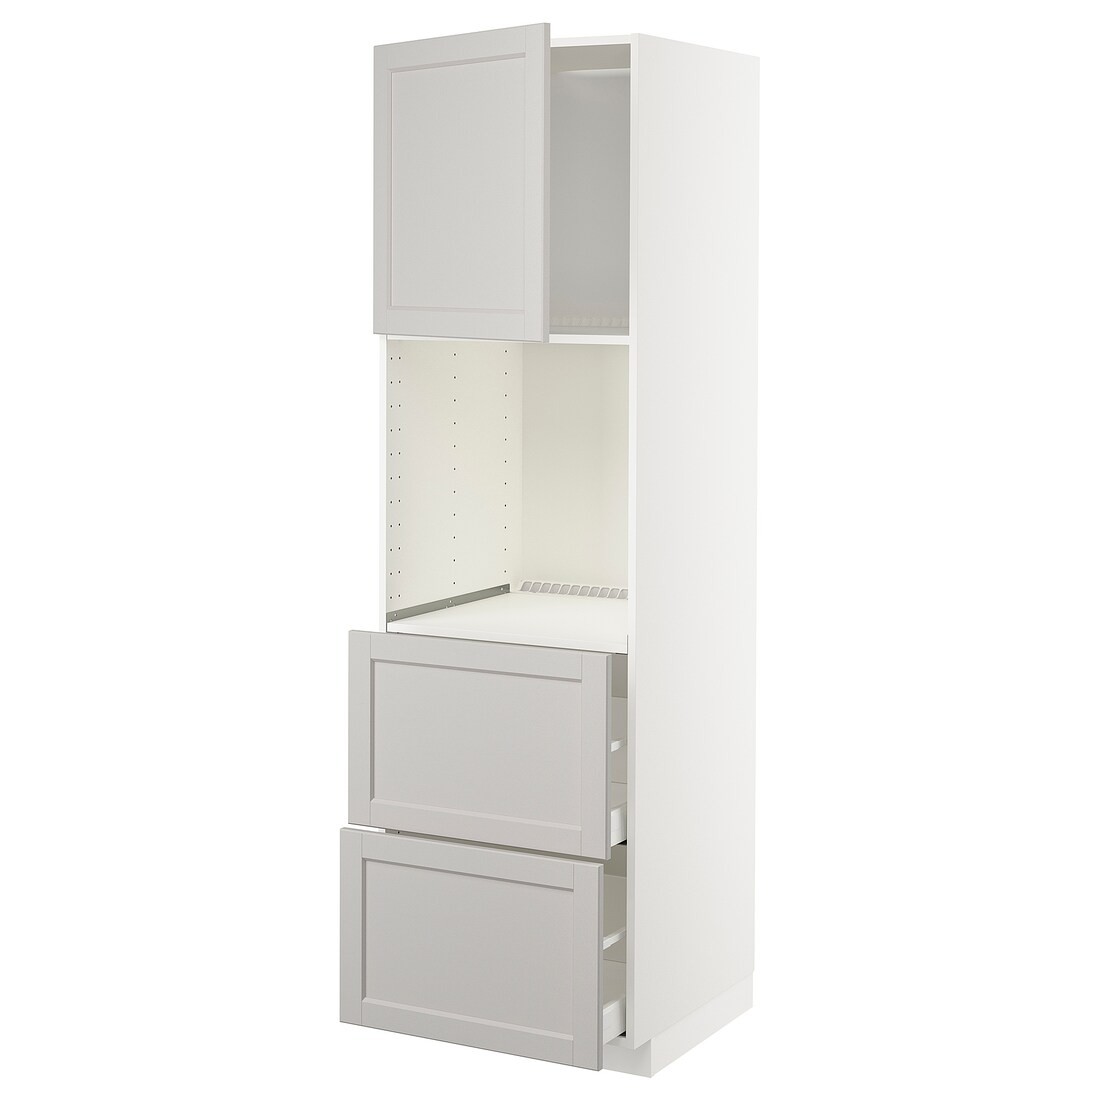 IKEA METOD МЕТОД / MAXIMERA МАКСИМЕРА Высокий шкаф для духовки с дверцей / ящиками, белый / Lerhyttan светло-серый, 60x60x200 см 89458024 | 894.580.24